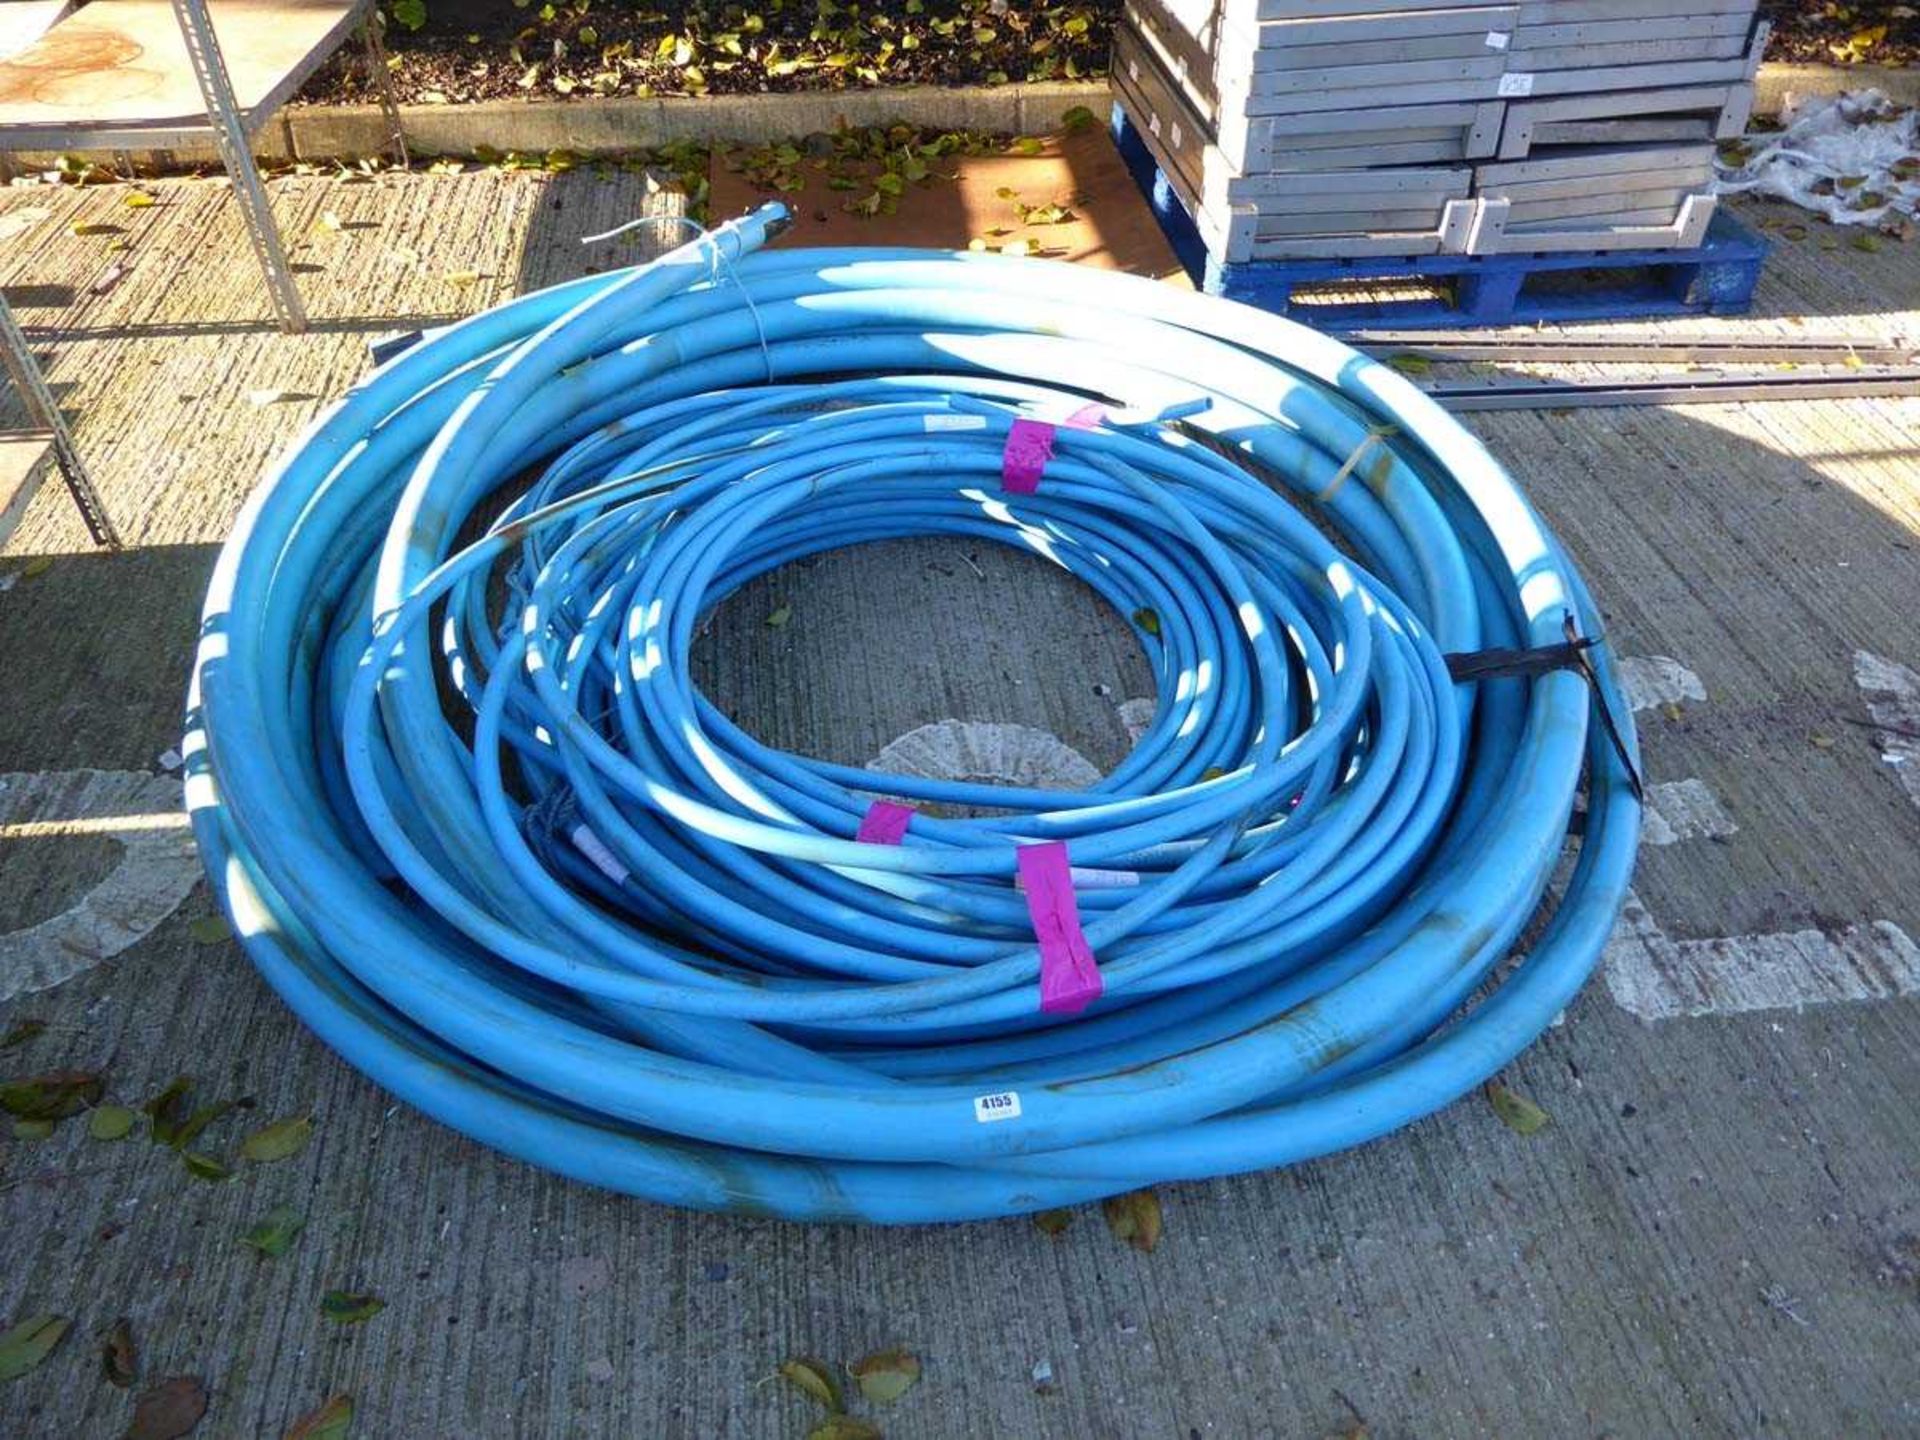 Large quantity of blue plastic pipe